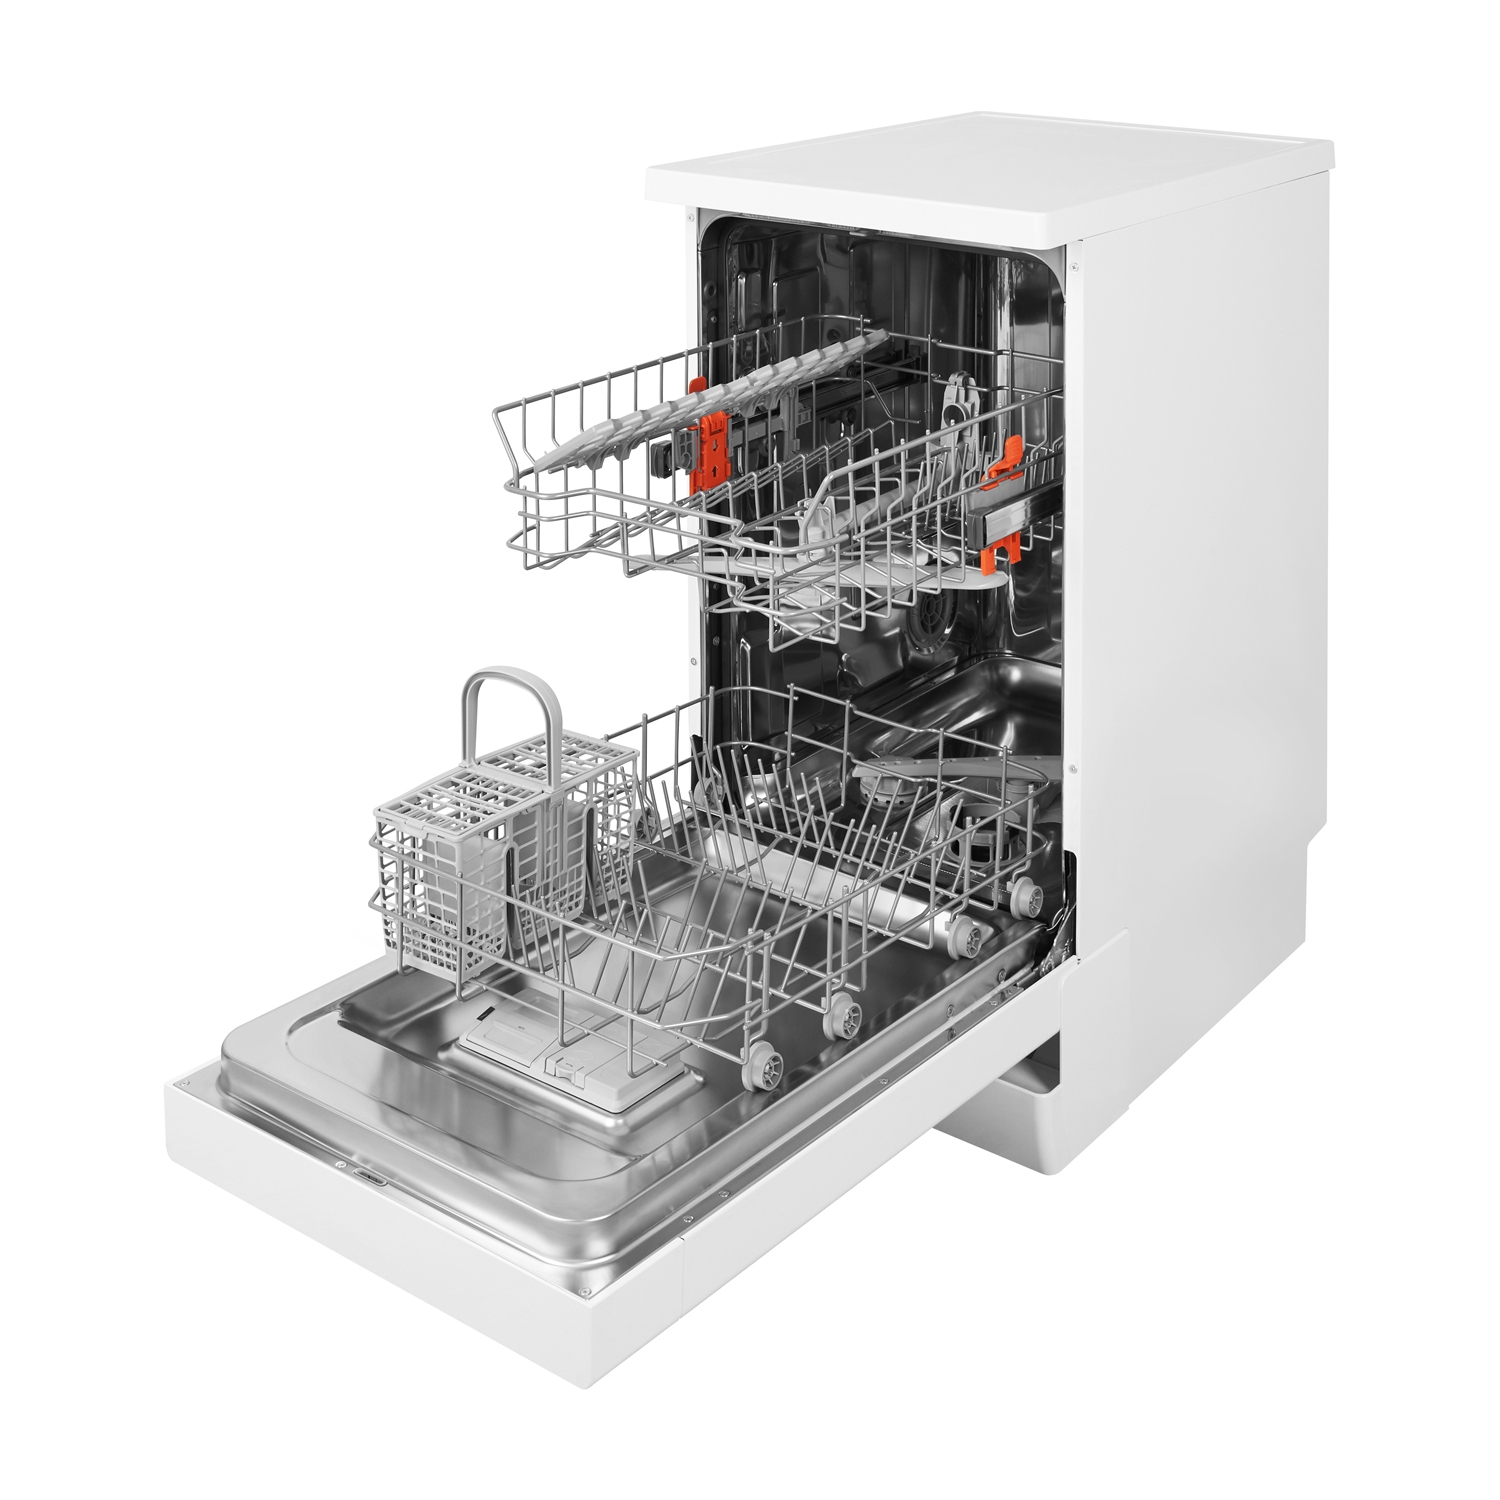 Hotpoint 10 Place Slimline Dishwasher (white - A+ energy rating) - 1